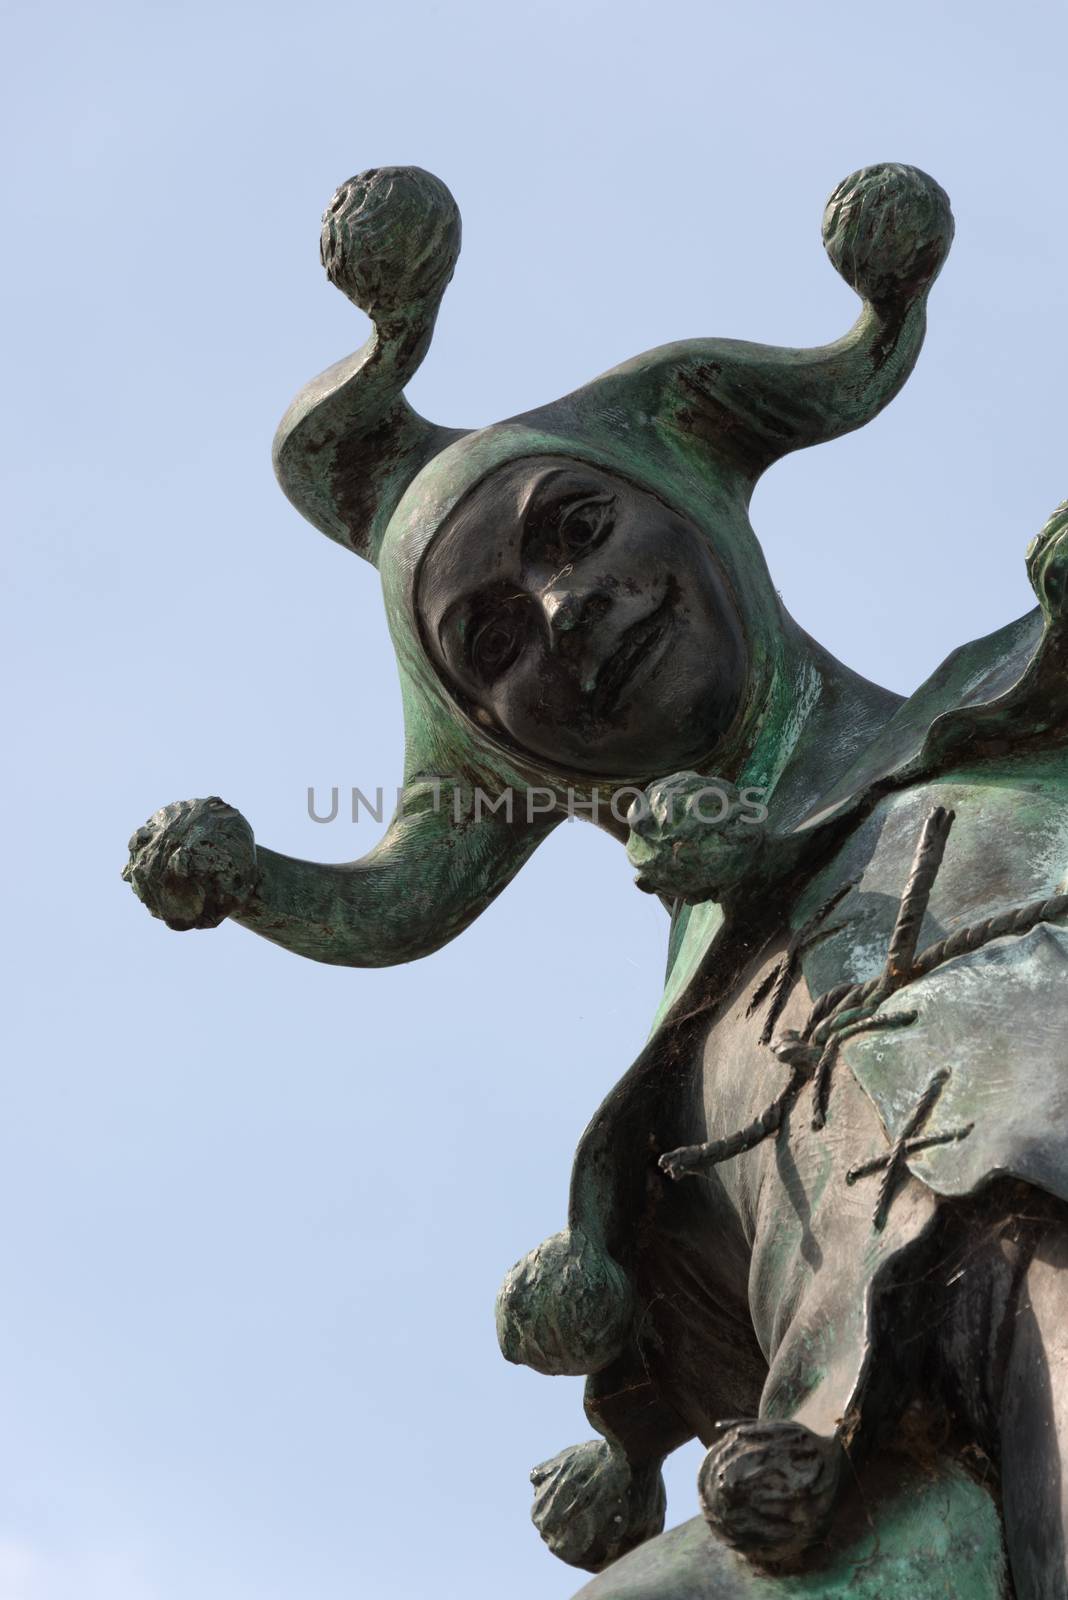 Jester Statue, Stratford-upon-Avon